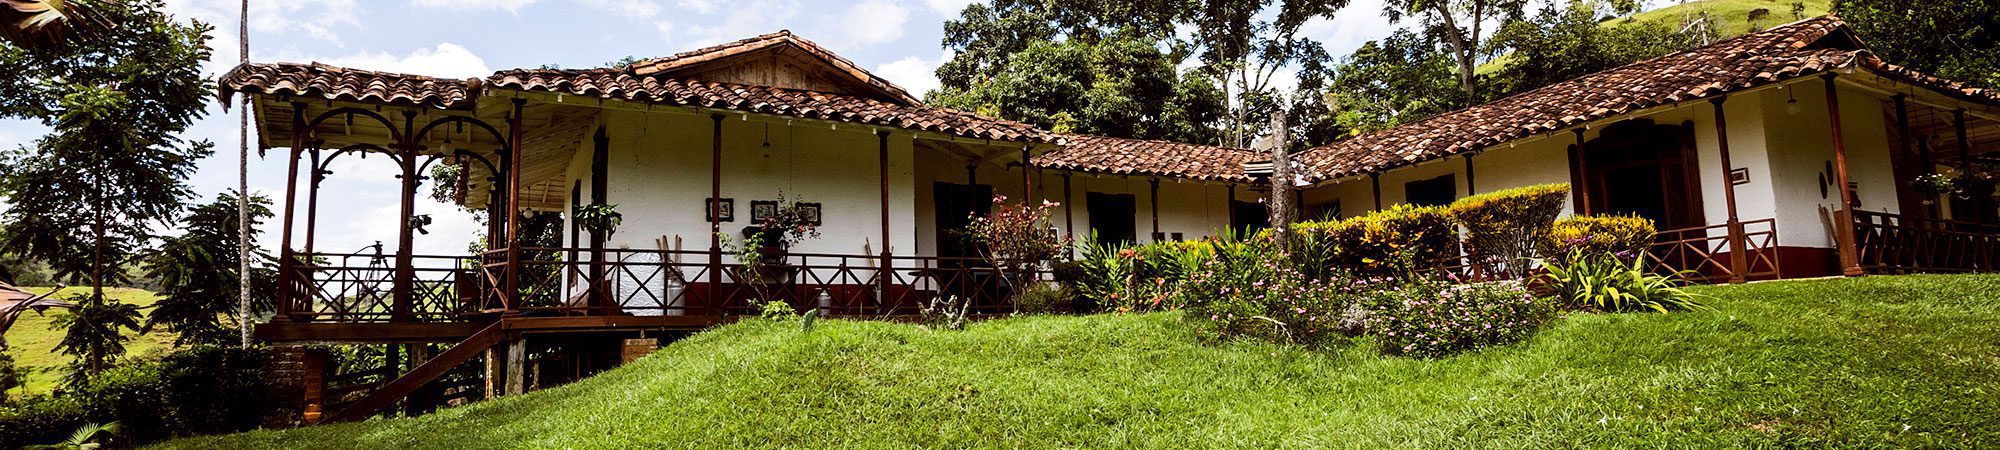 Casa Colonial - Antioquia | Foto de: Alexander Canas Arango